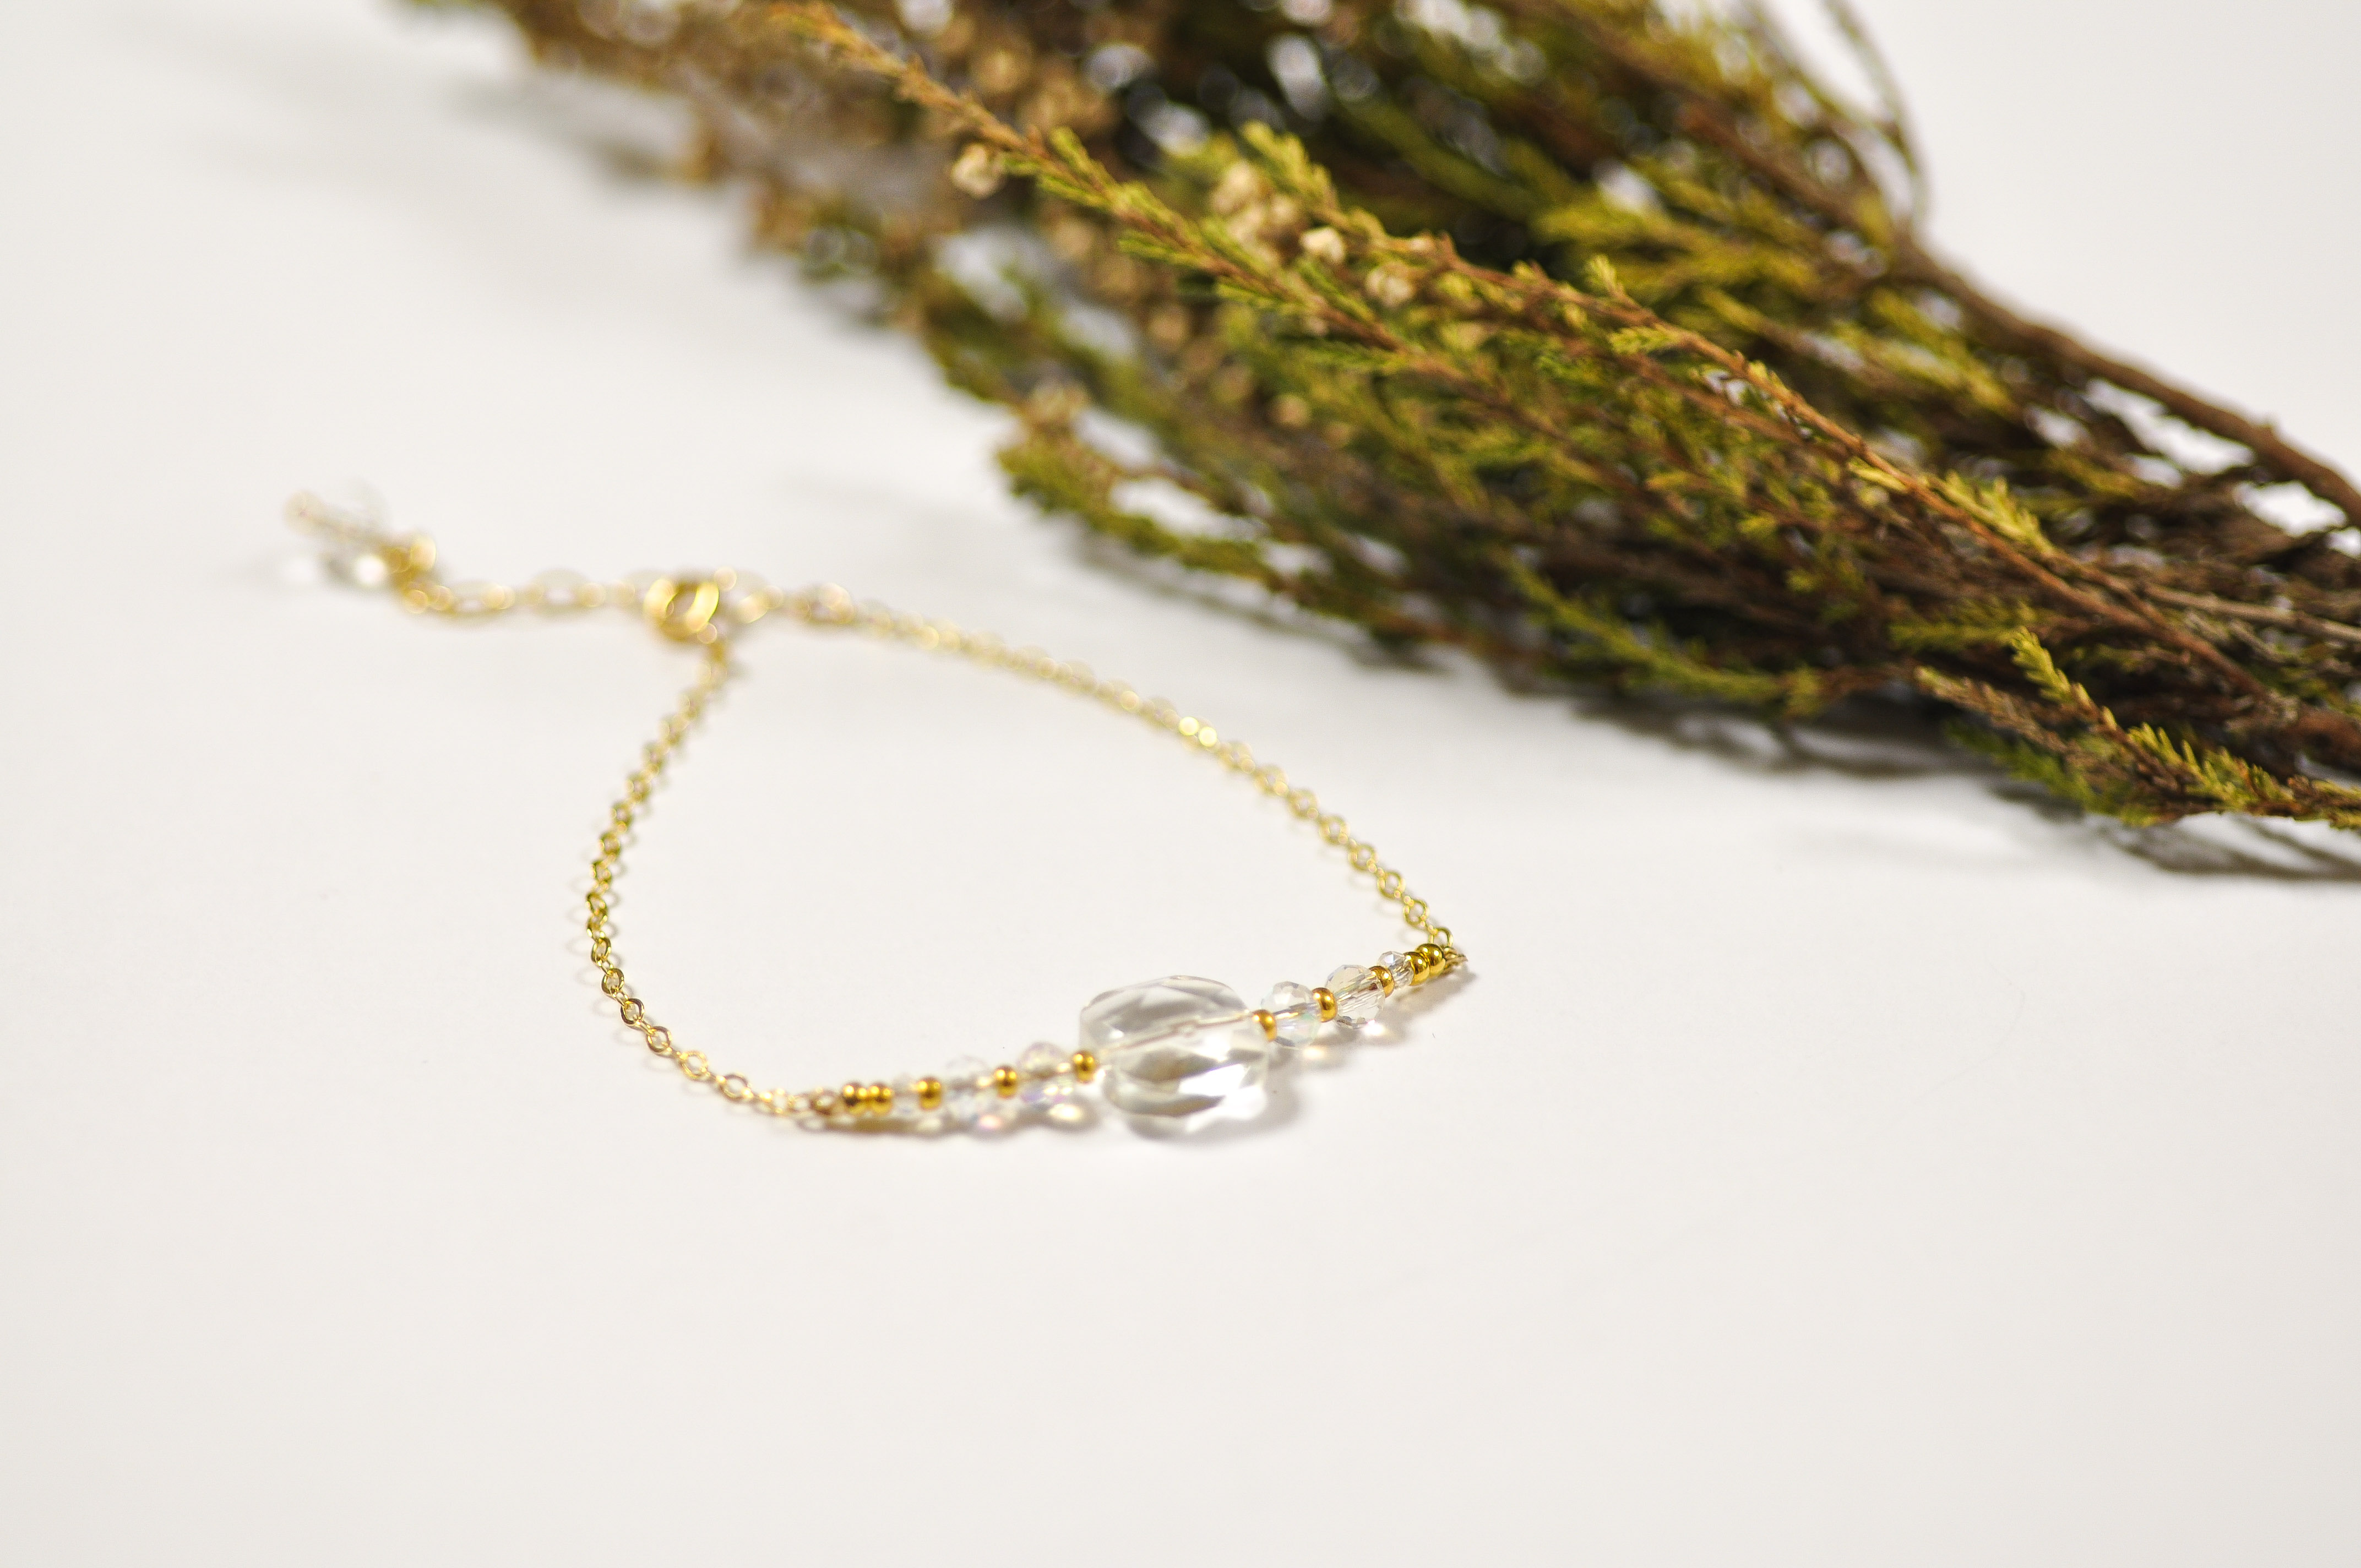 Marie Gonon bijoux bohème chic Saint-Etienne Loire - bracelet en gold filled et perles blanches ou transparentes